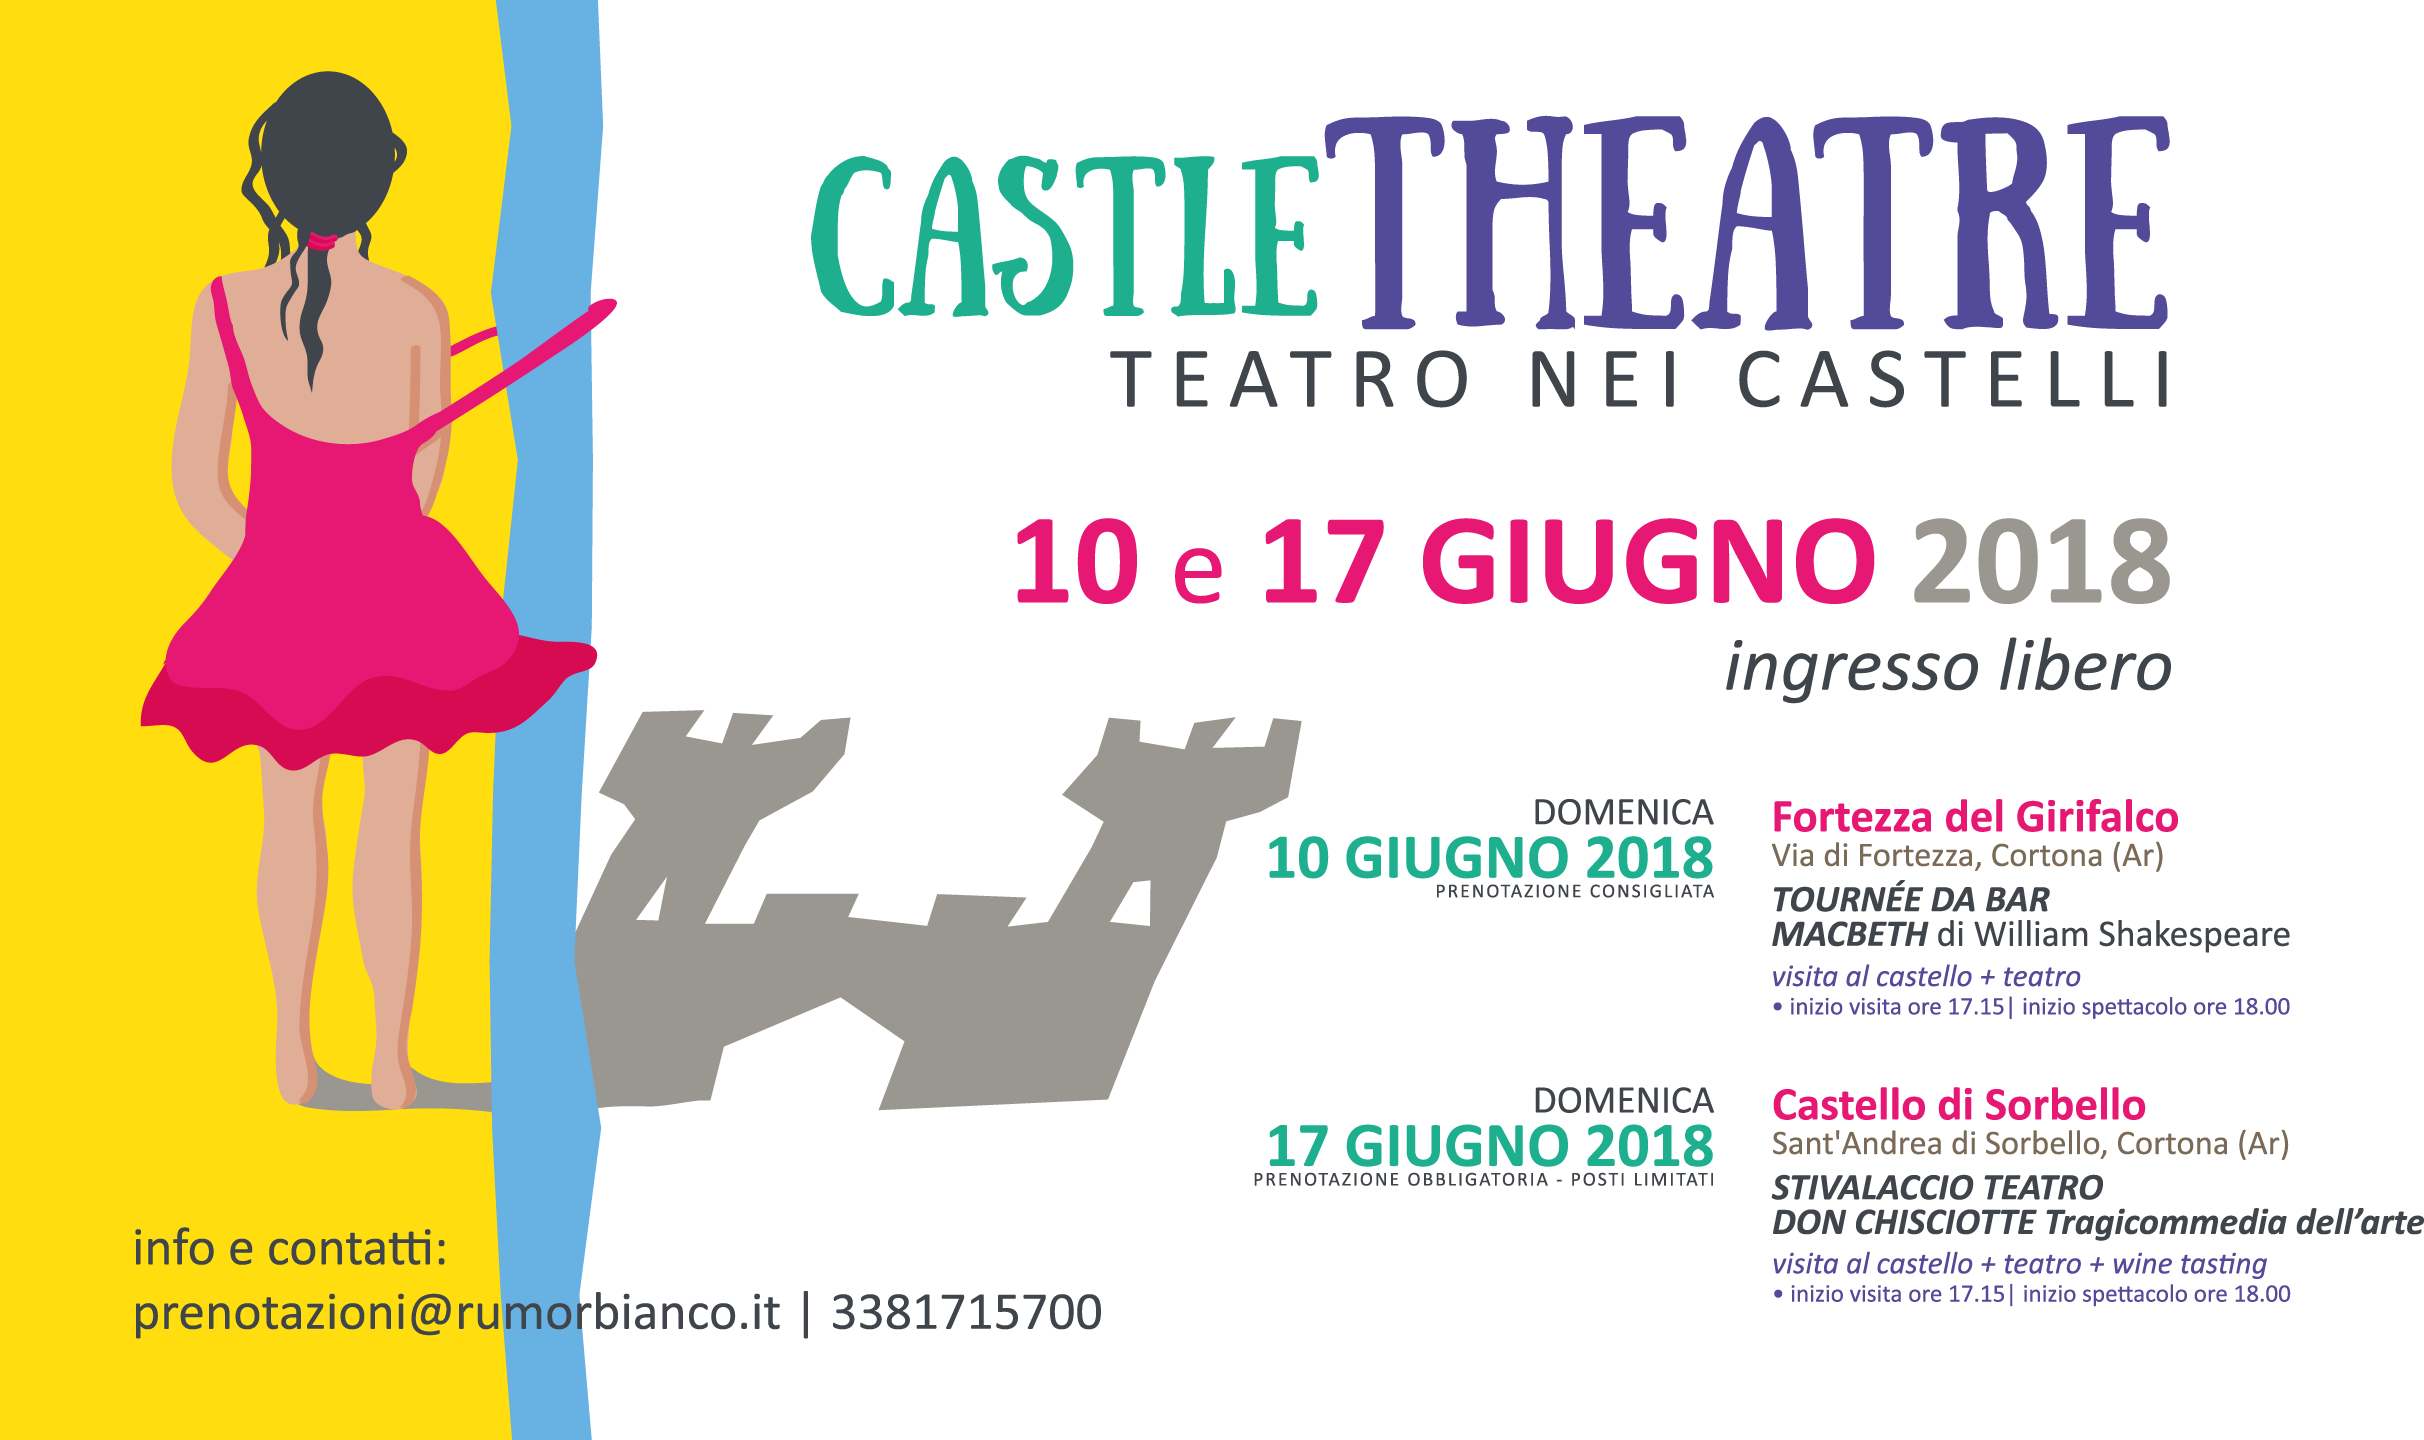 Castel Theatre - Teatro nei castelli